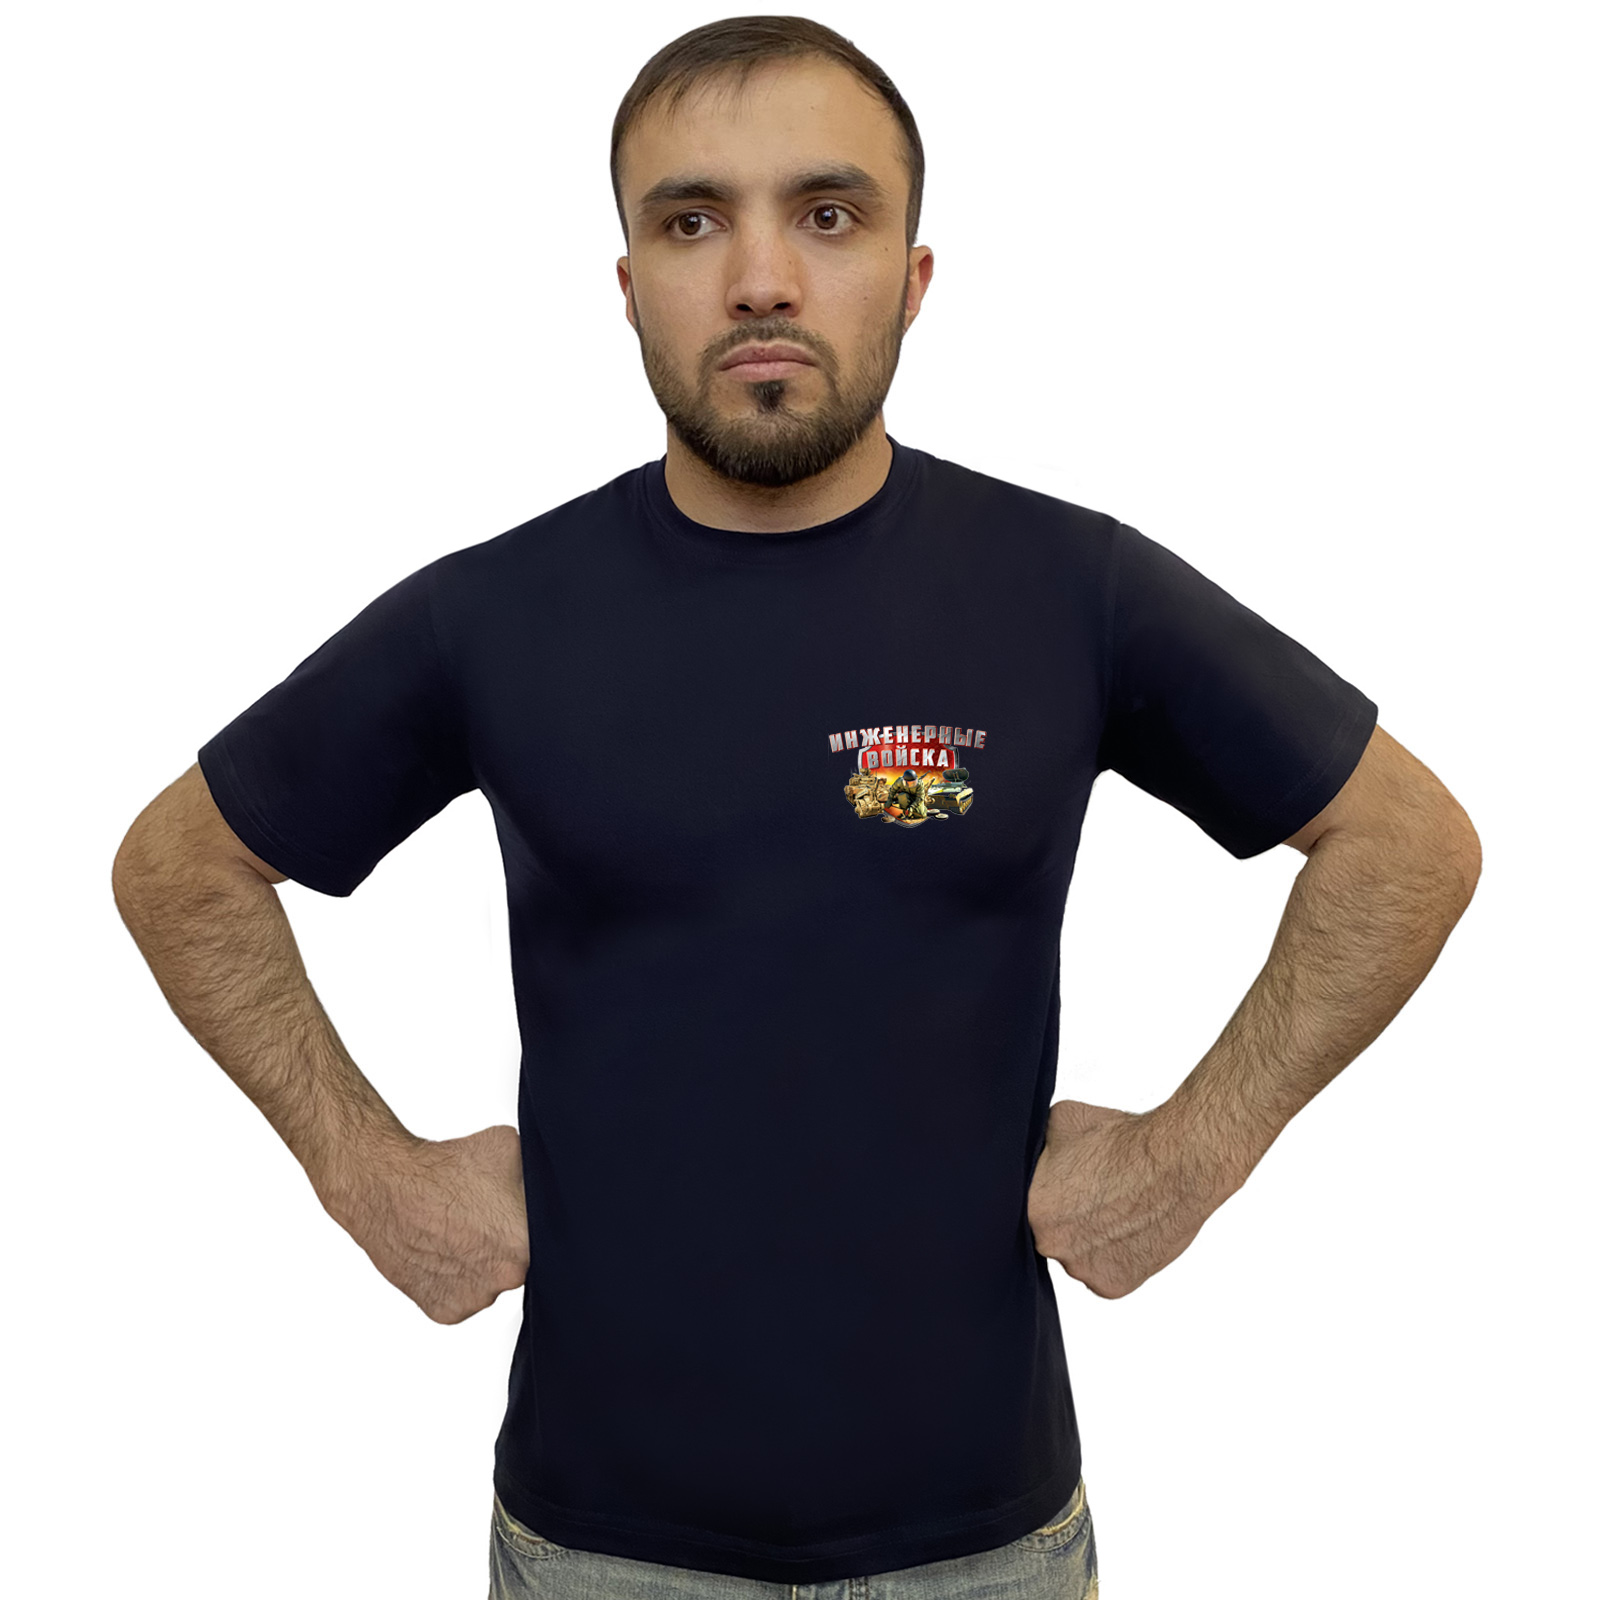 Мужские футболки и другая одежда с символикой Инженерных войск